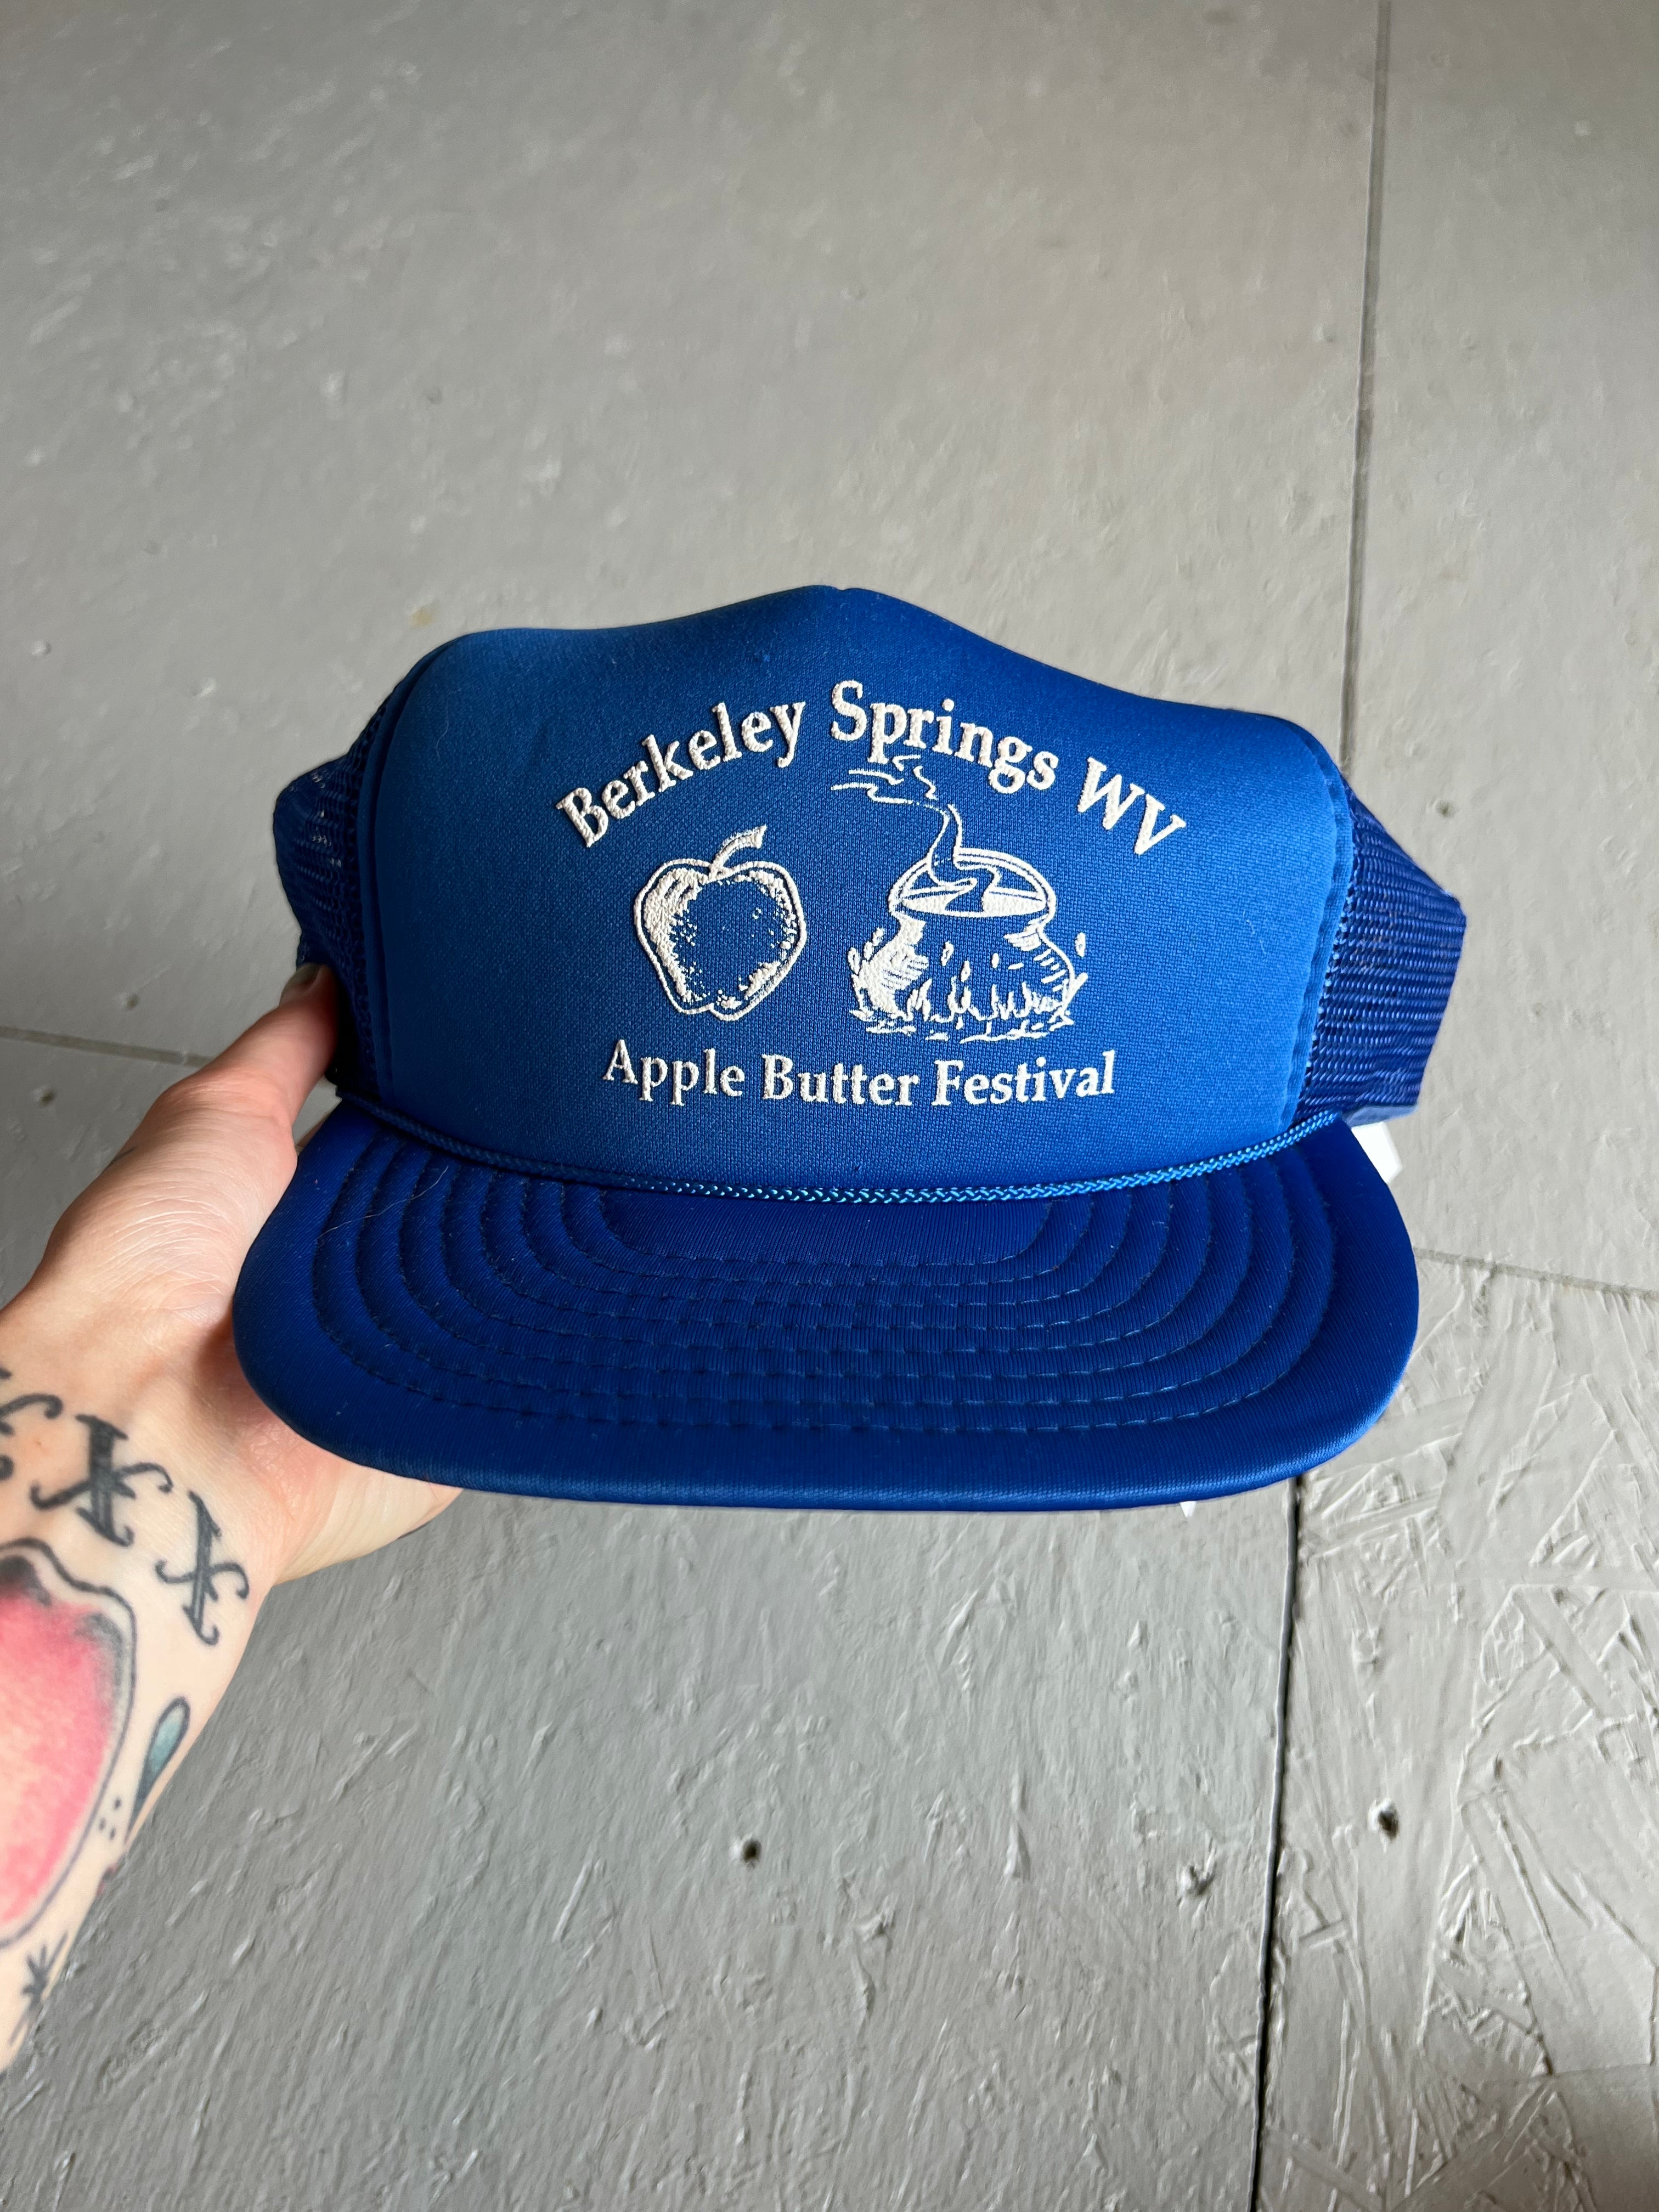 Vintage apple butter hat